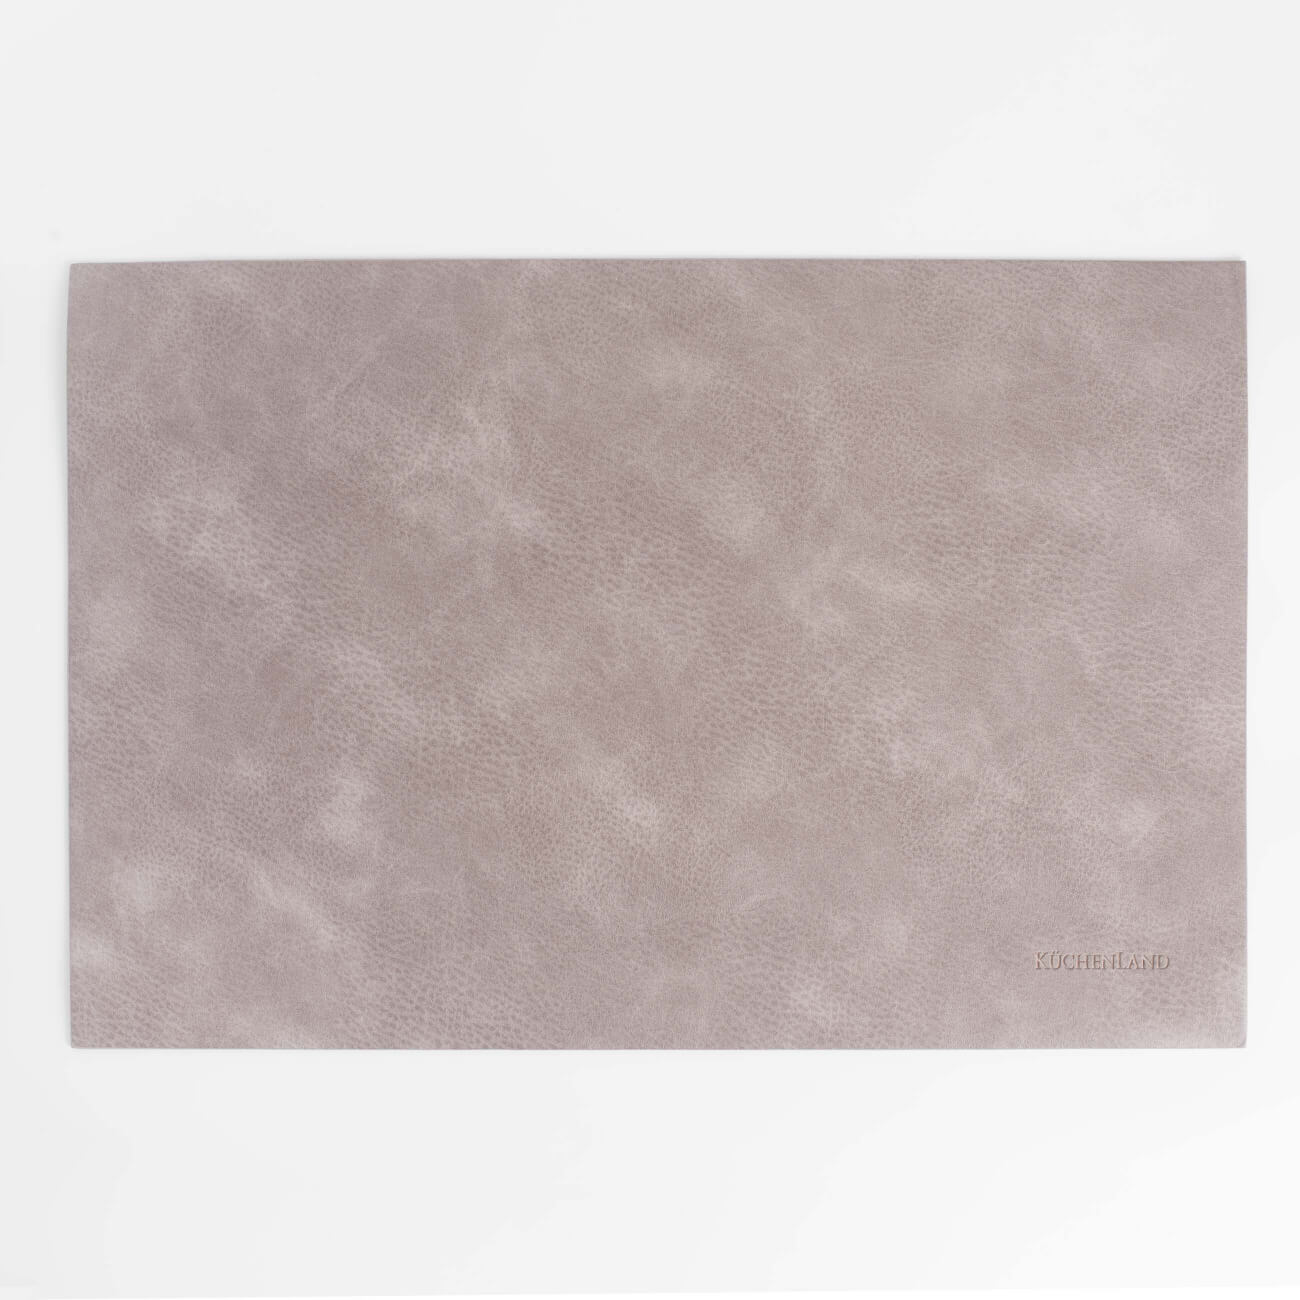 Салфетка под приборы, 30х45 см, ПВХ, прямоугольная, серо-коричневая, Rock изображение № 1